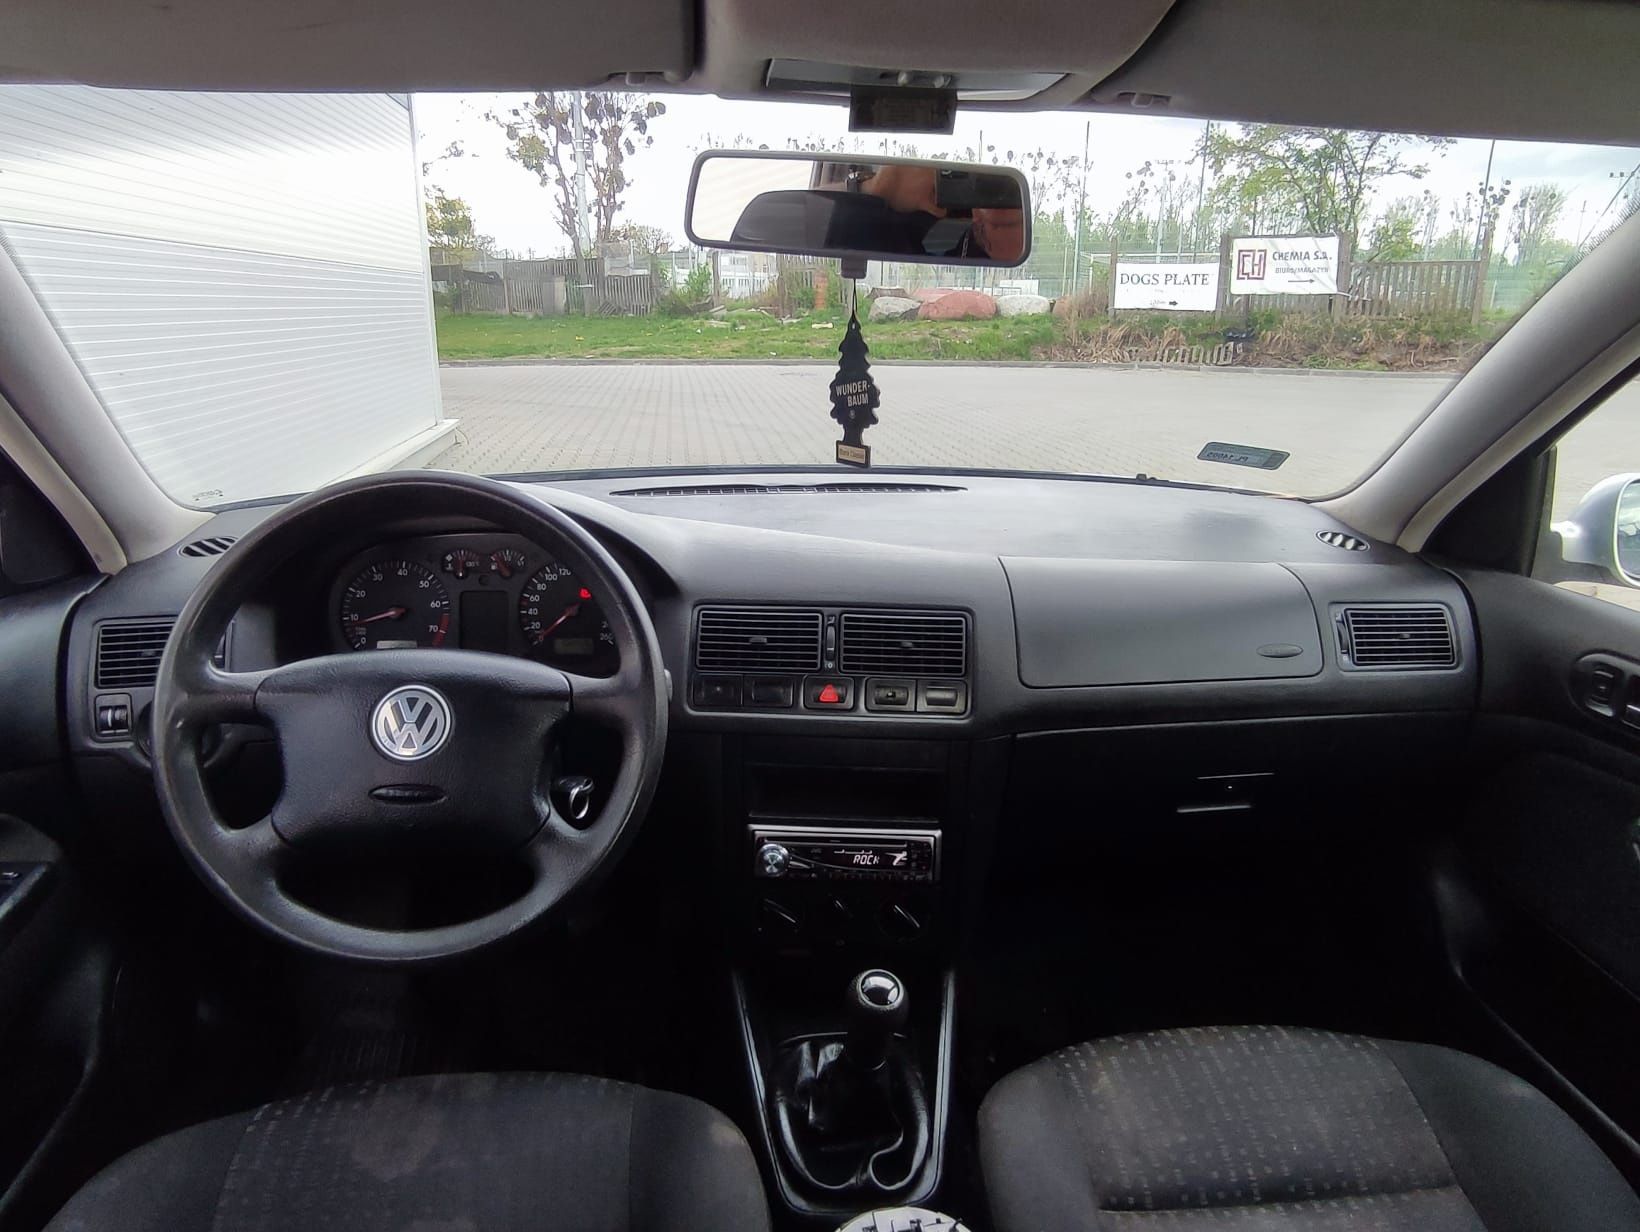 VW GOLF 2002r przeb 165tys 1.6 benzyna 5d wspomaganie elektryka hak